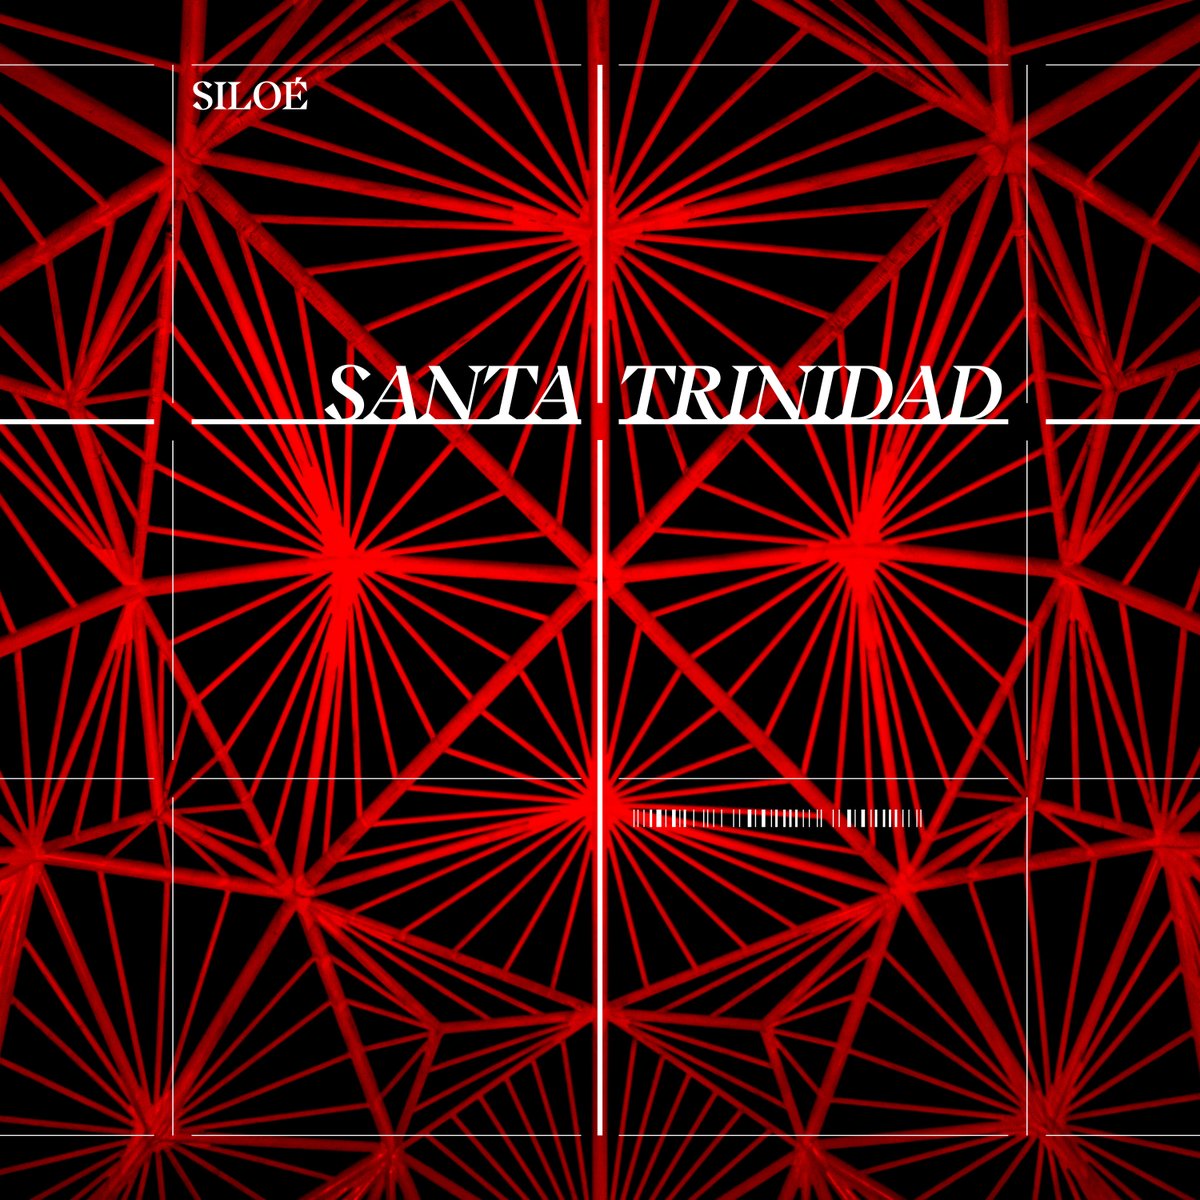 SILOÉ presenta 'Santa Trinidad', su asalto al cielo del rock patrio @siloe_music mirollo.es/musica/siloe-p… @TMusicRepublic Un abrazo desde #MiRollo desde #dondevivenlosabrazos